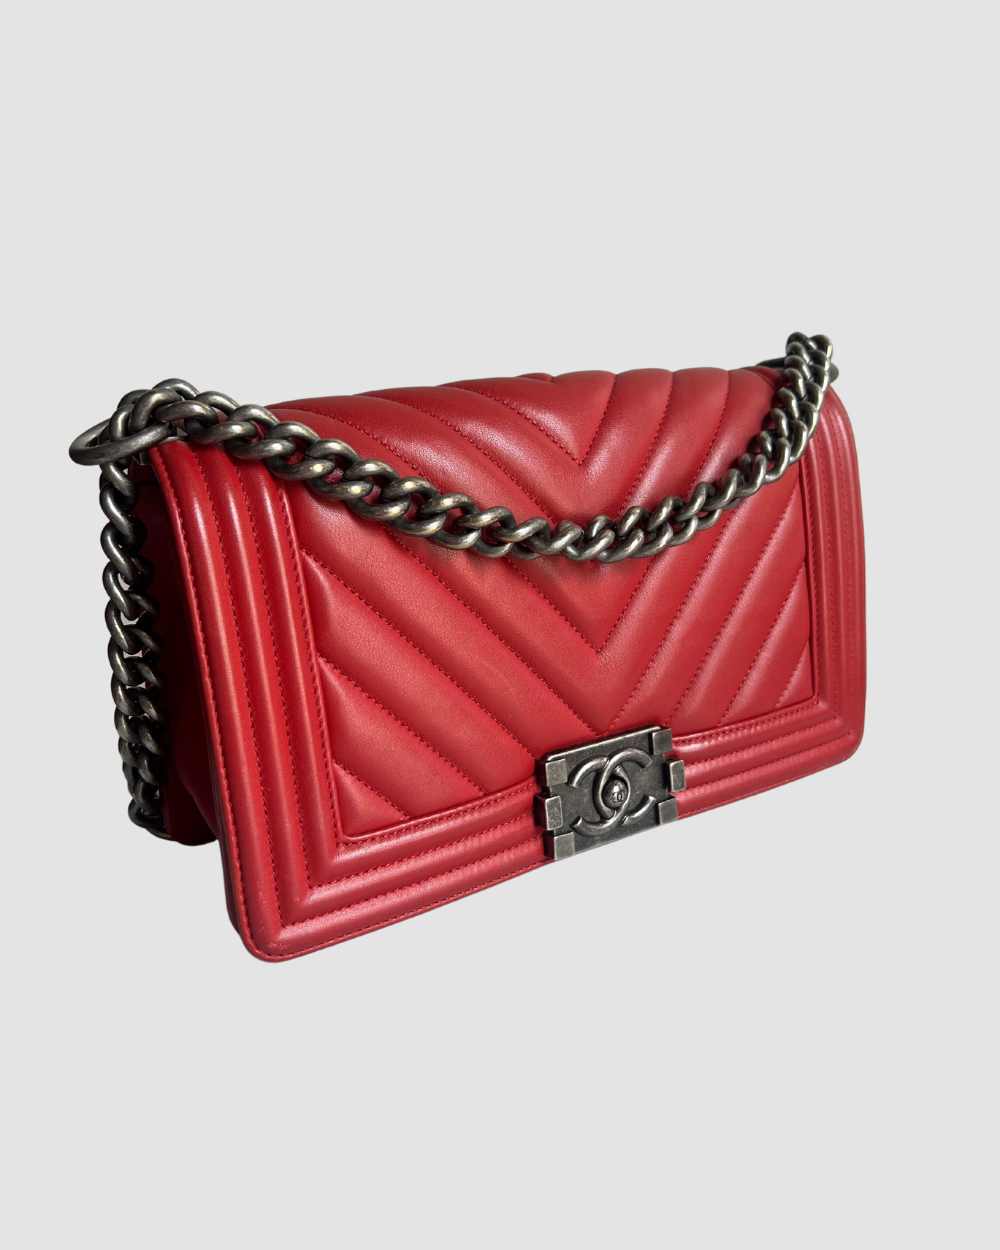 Chanel Red Chevron Lambskin Leather Medium Boy Bag RHW